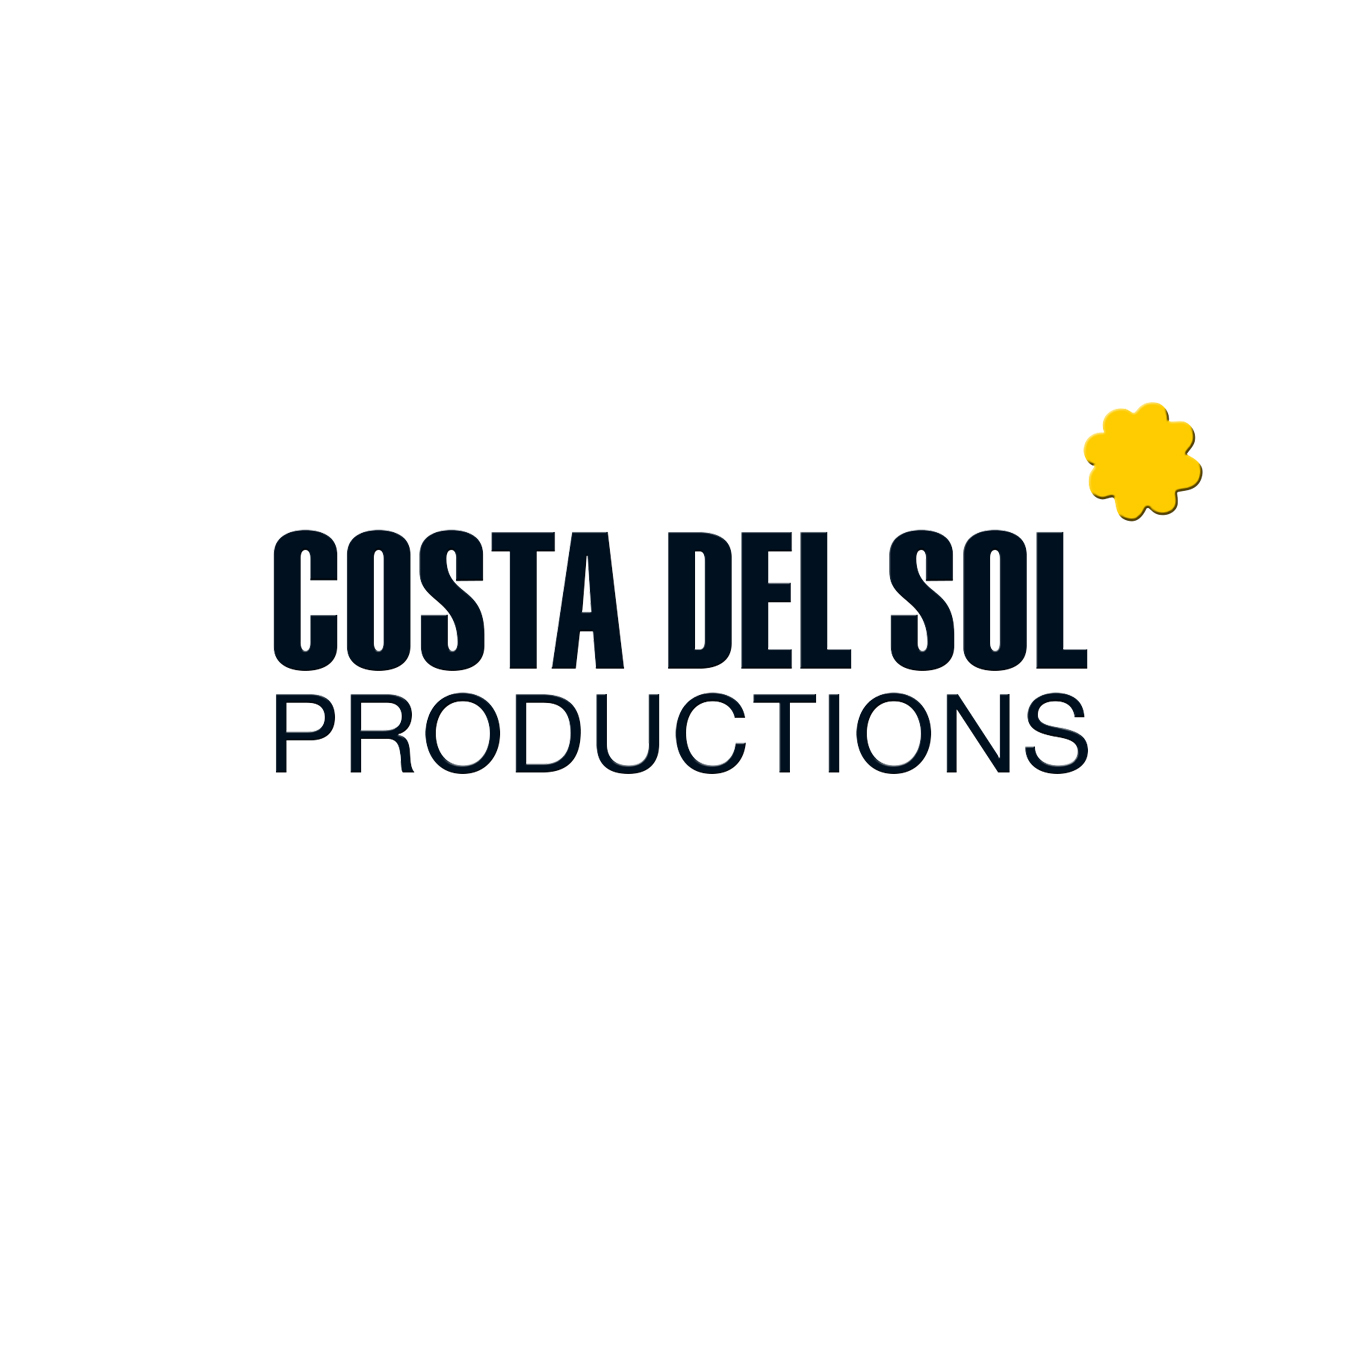 COSTA DEL SOL productions